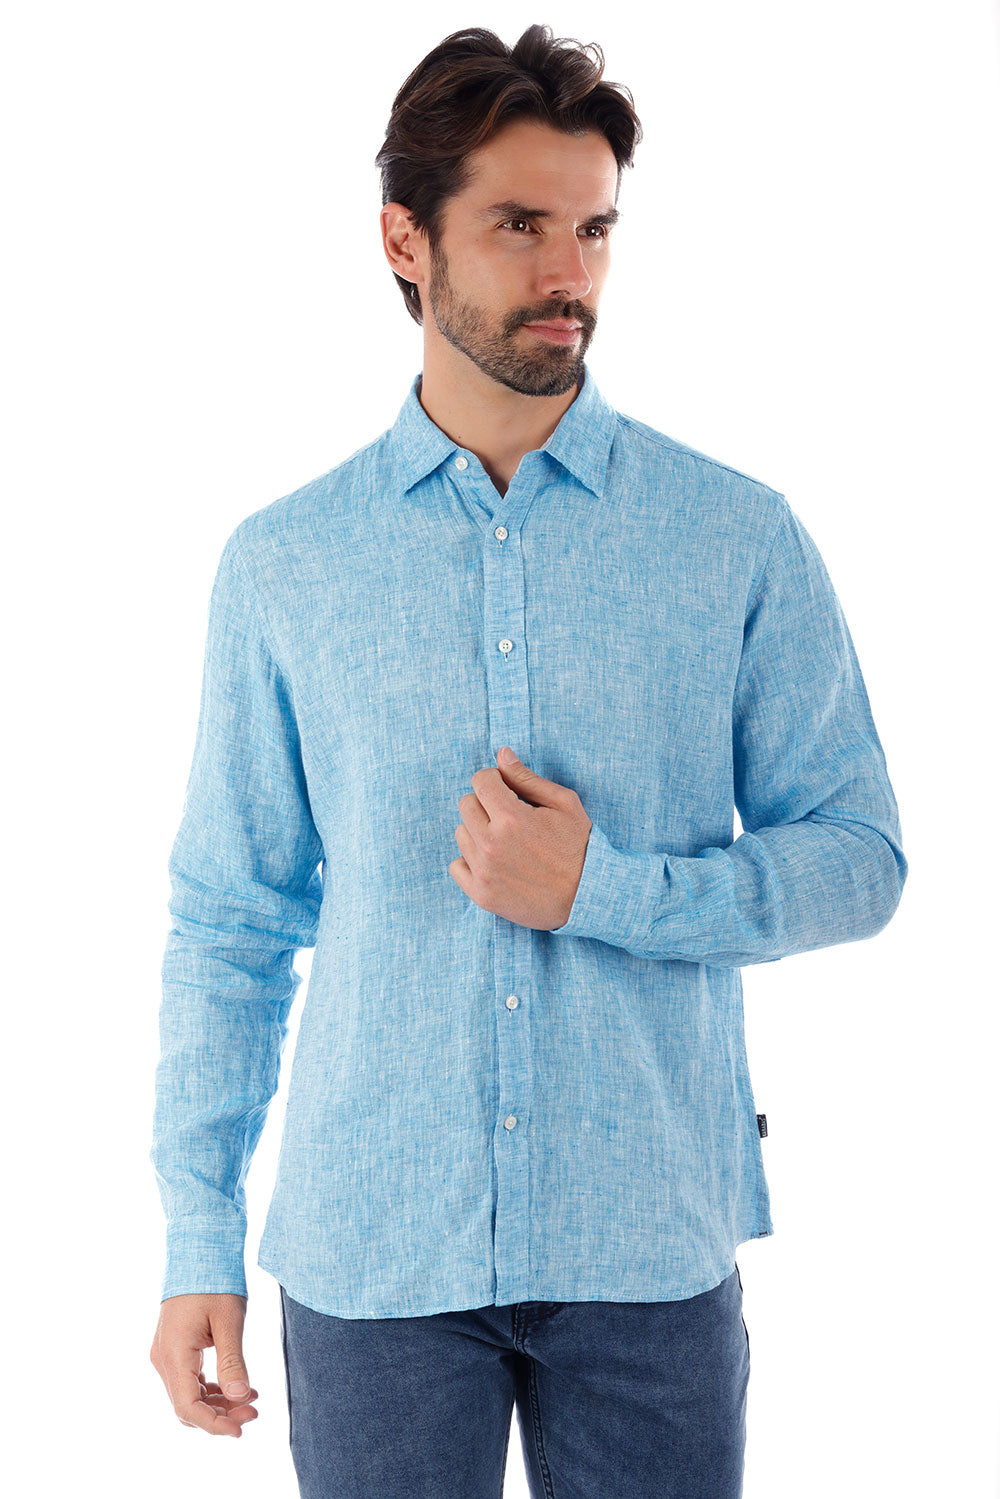 BARABAS Men's Linen Lightweight Button Down Long Sleeve Shirt 4B30 Blue